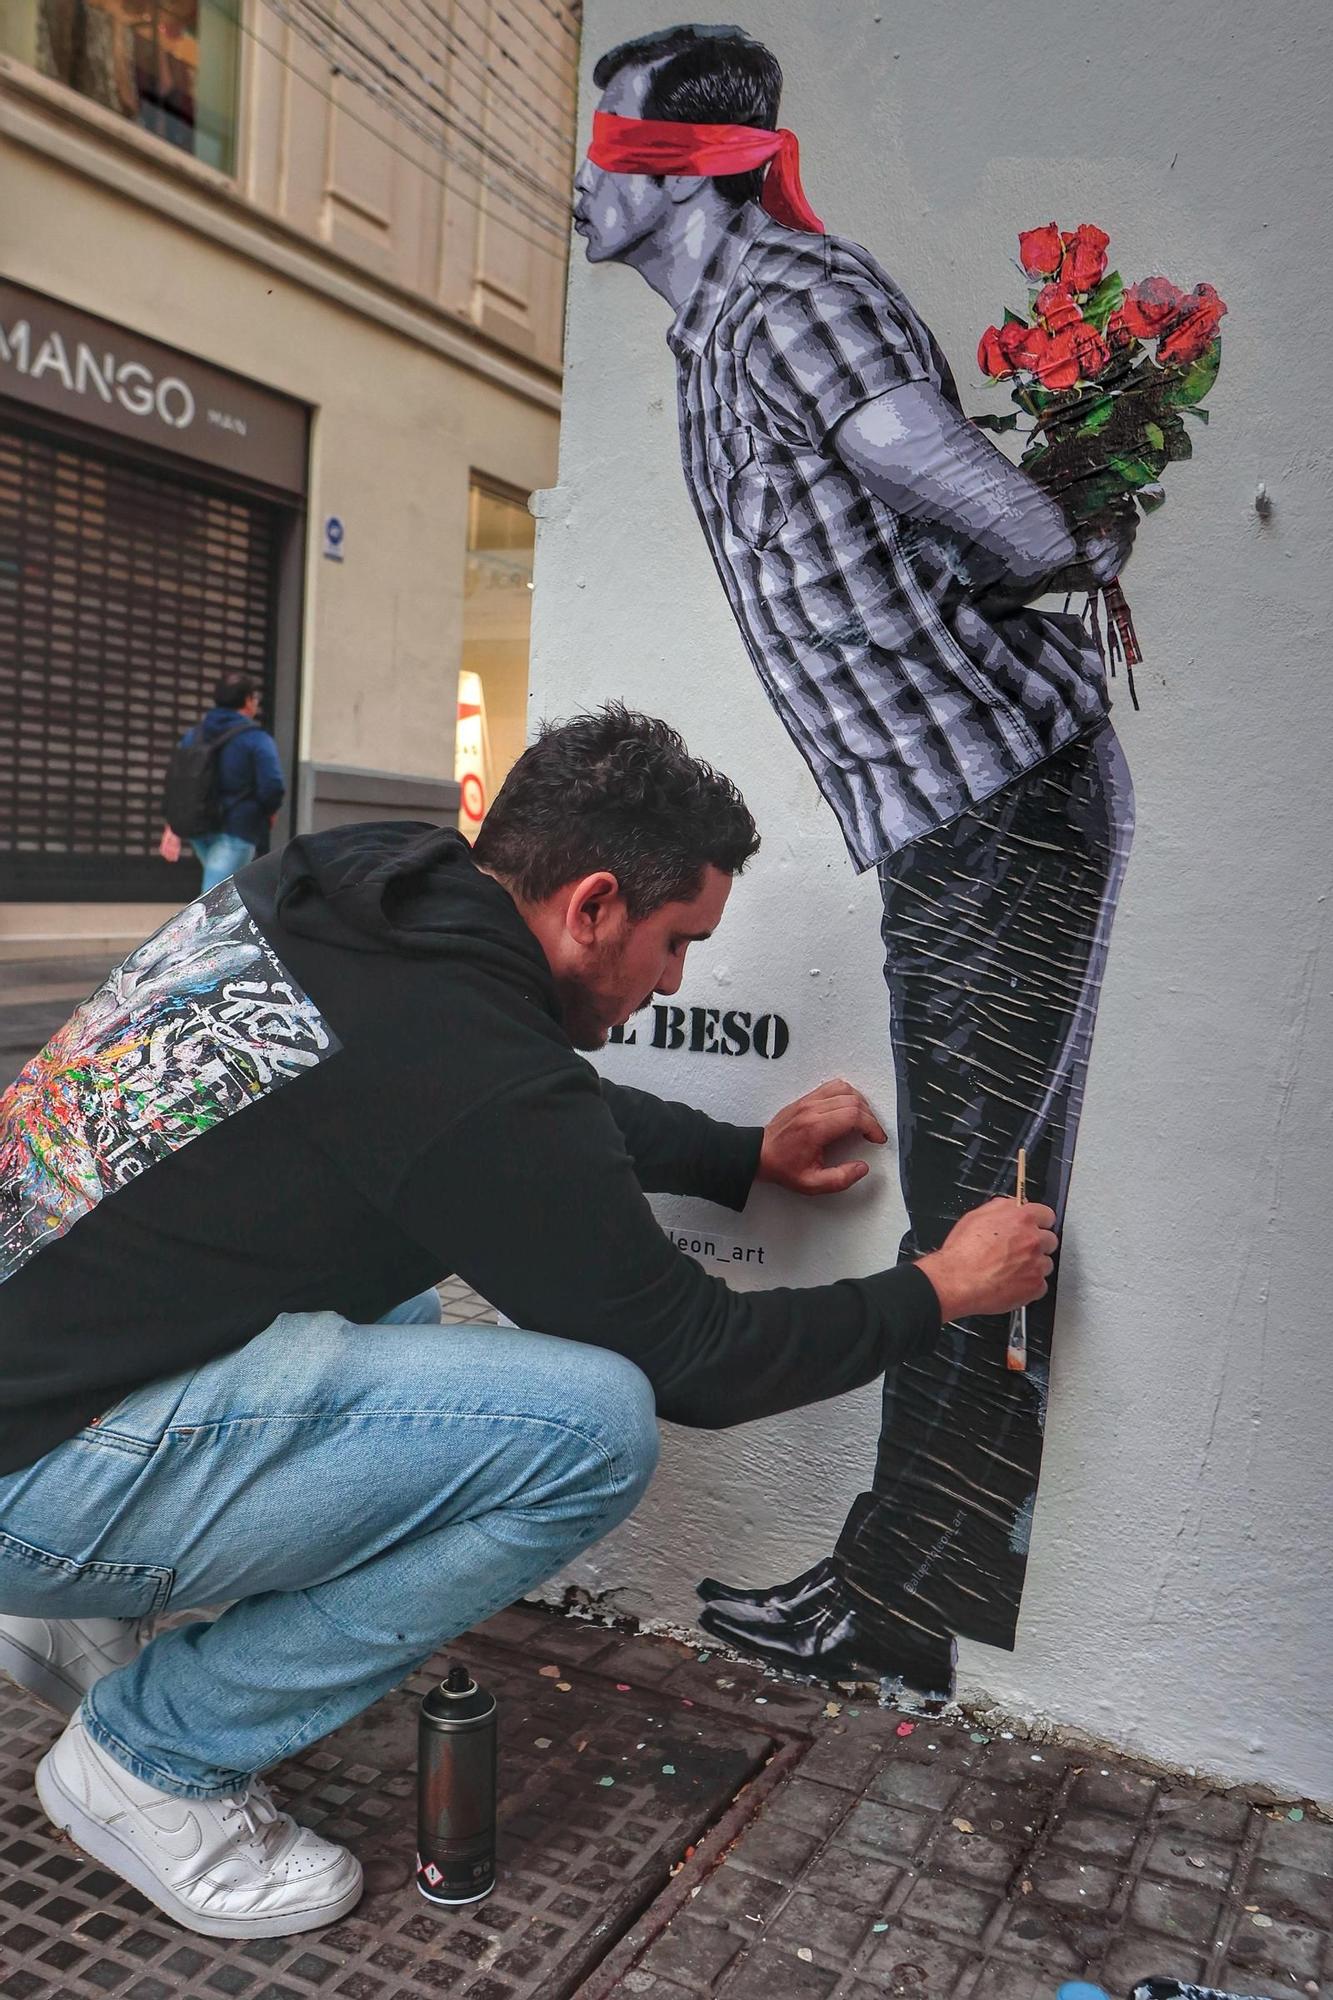 Alberto León pinta 'su beso' en la calle del Castillo